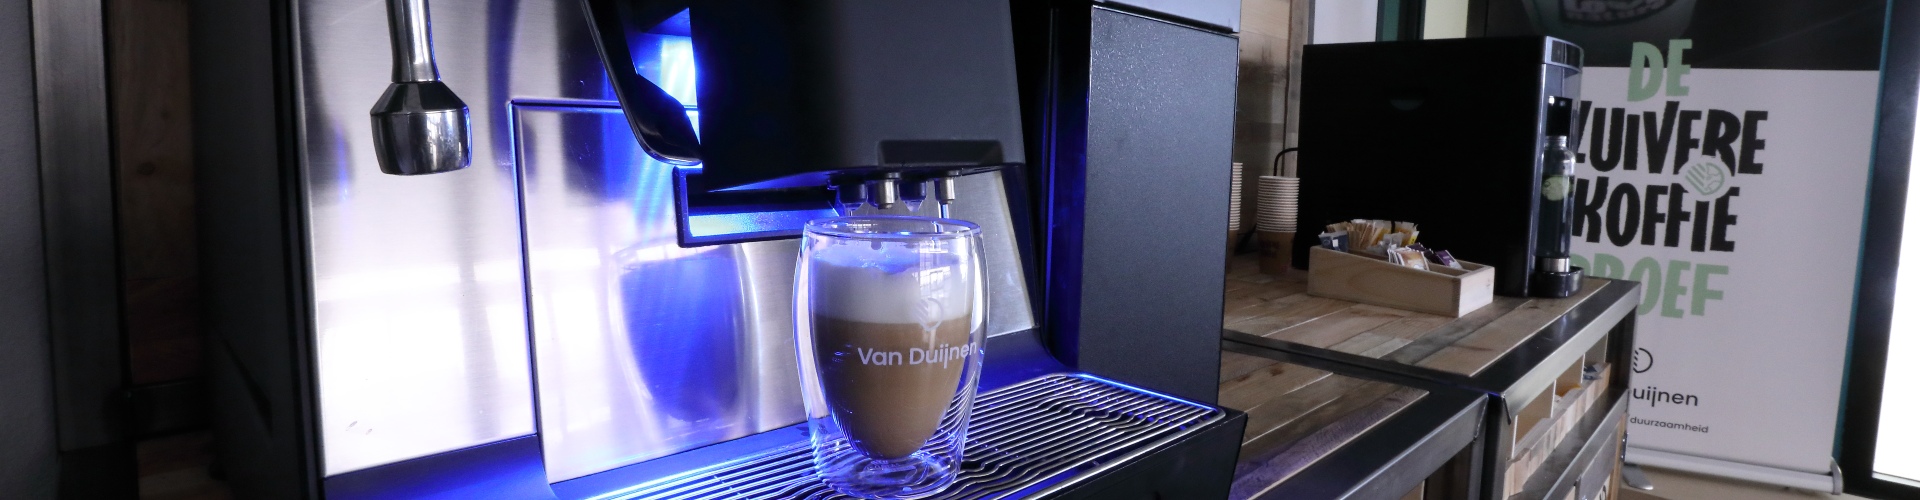 Koffie in theeglas met logo met cremalaag onder koffiemachine in koffiecorner